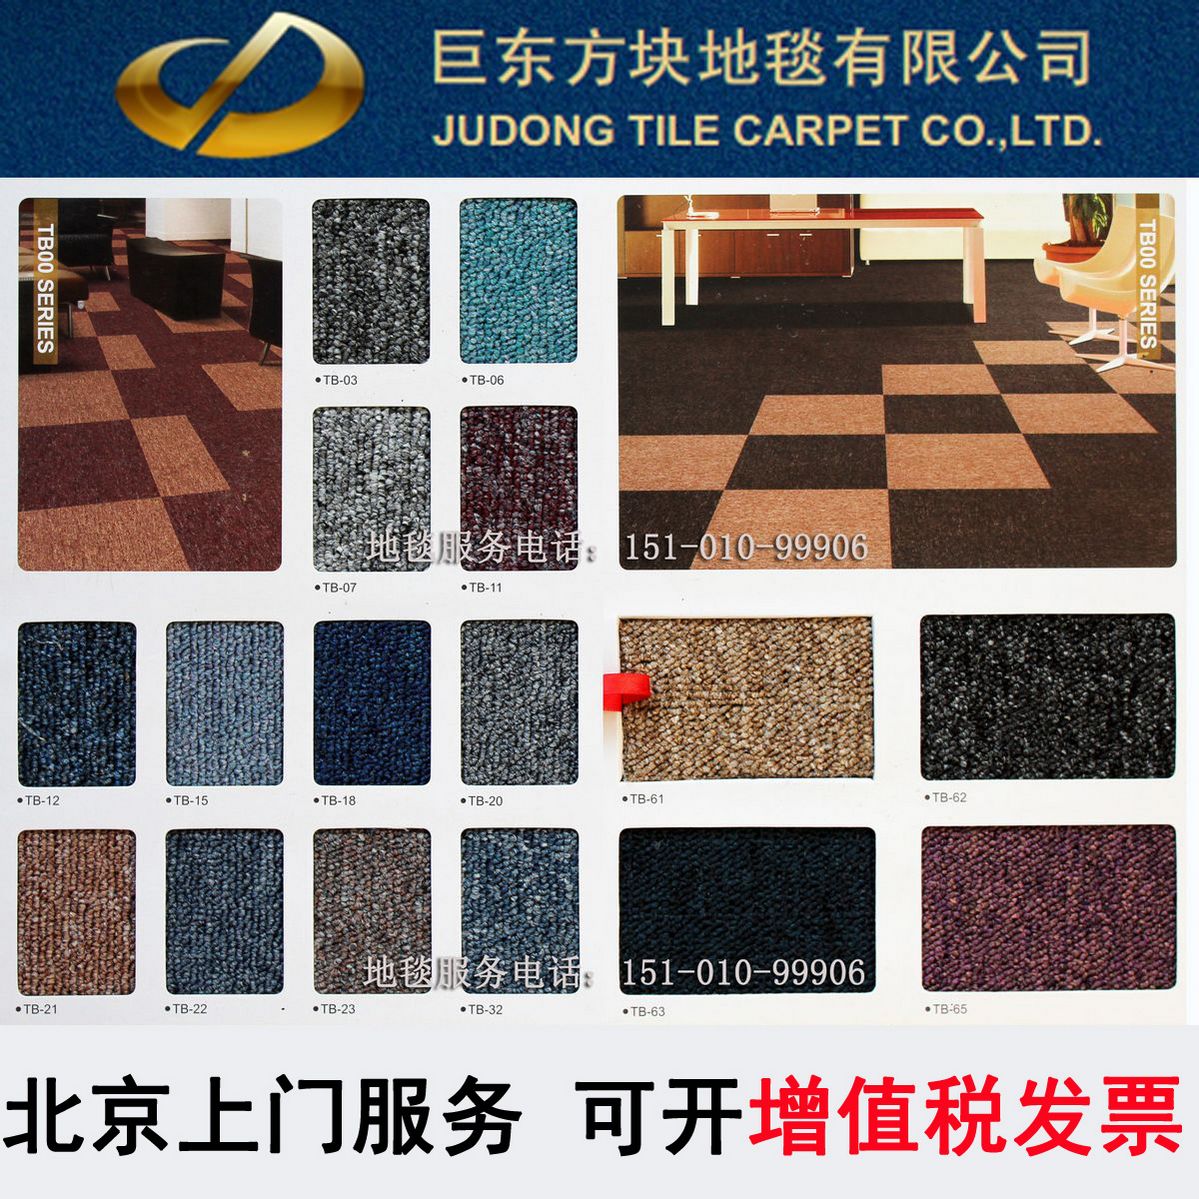 特价巨东北京 商务办公方块地毯 沥青低背加密型可包铺装